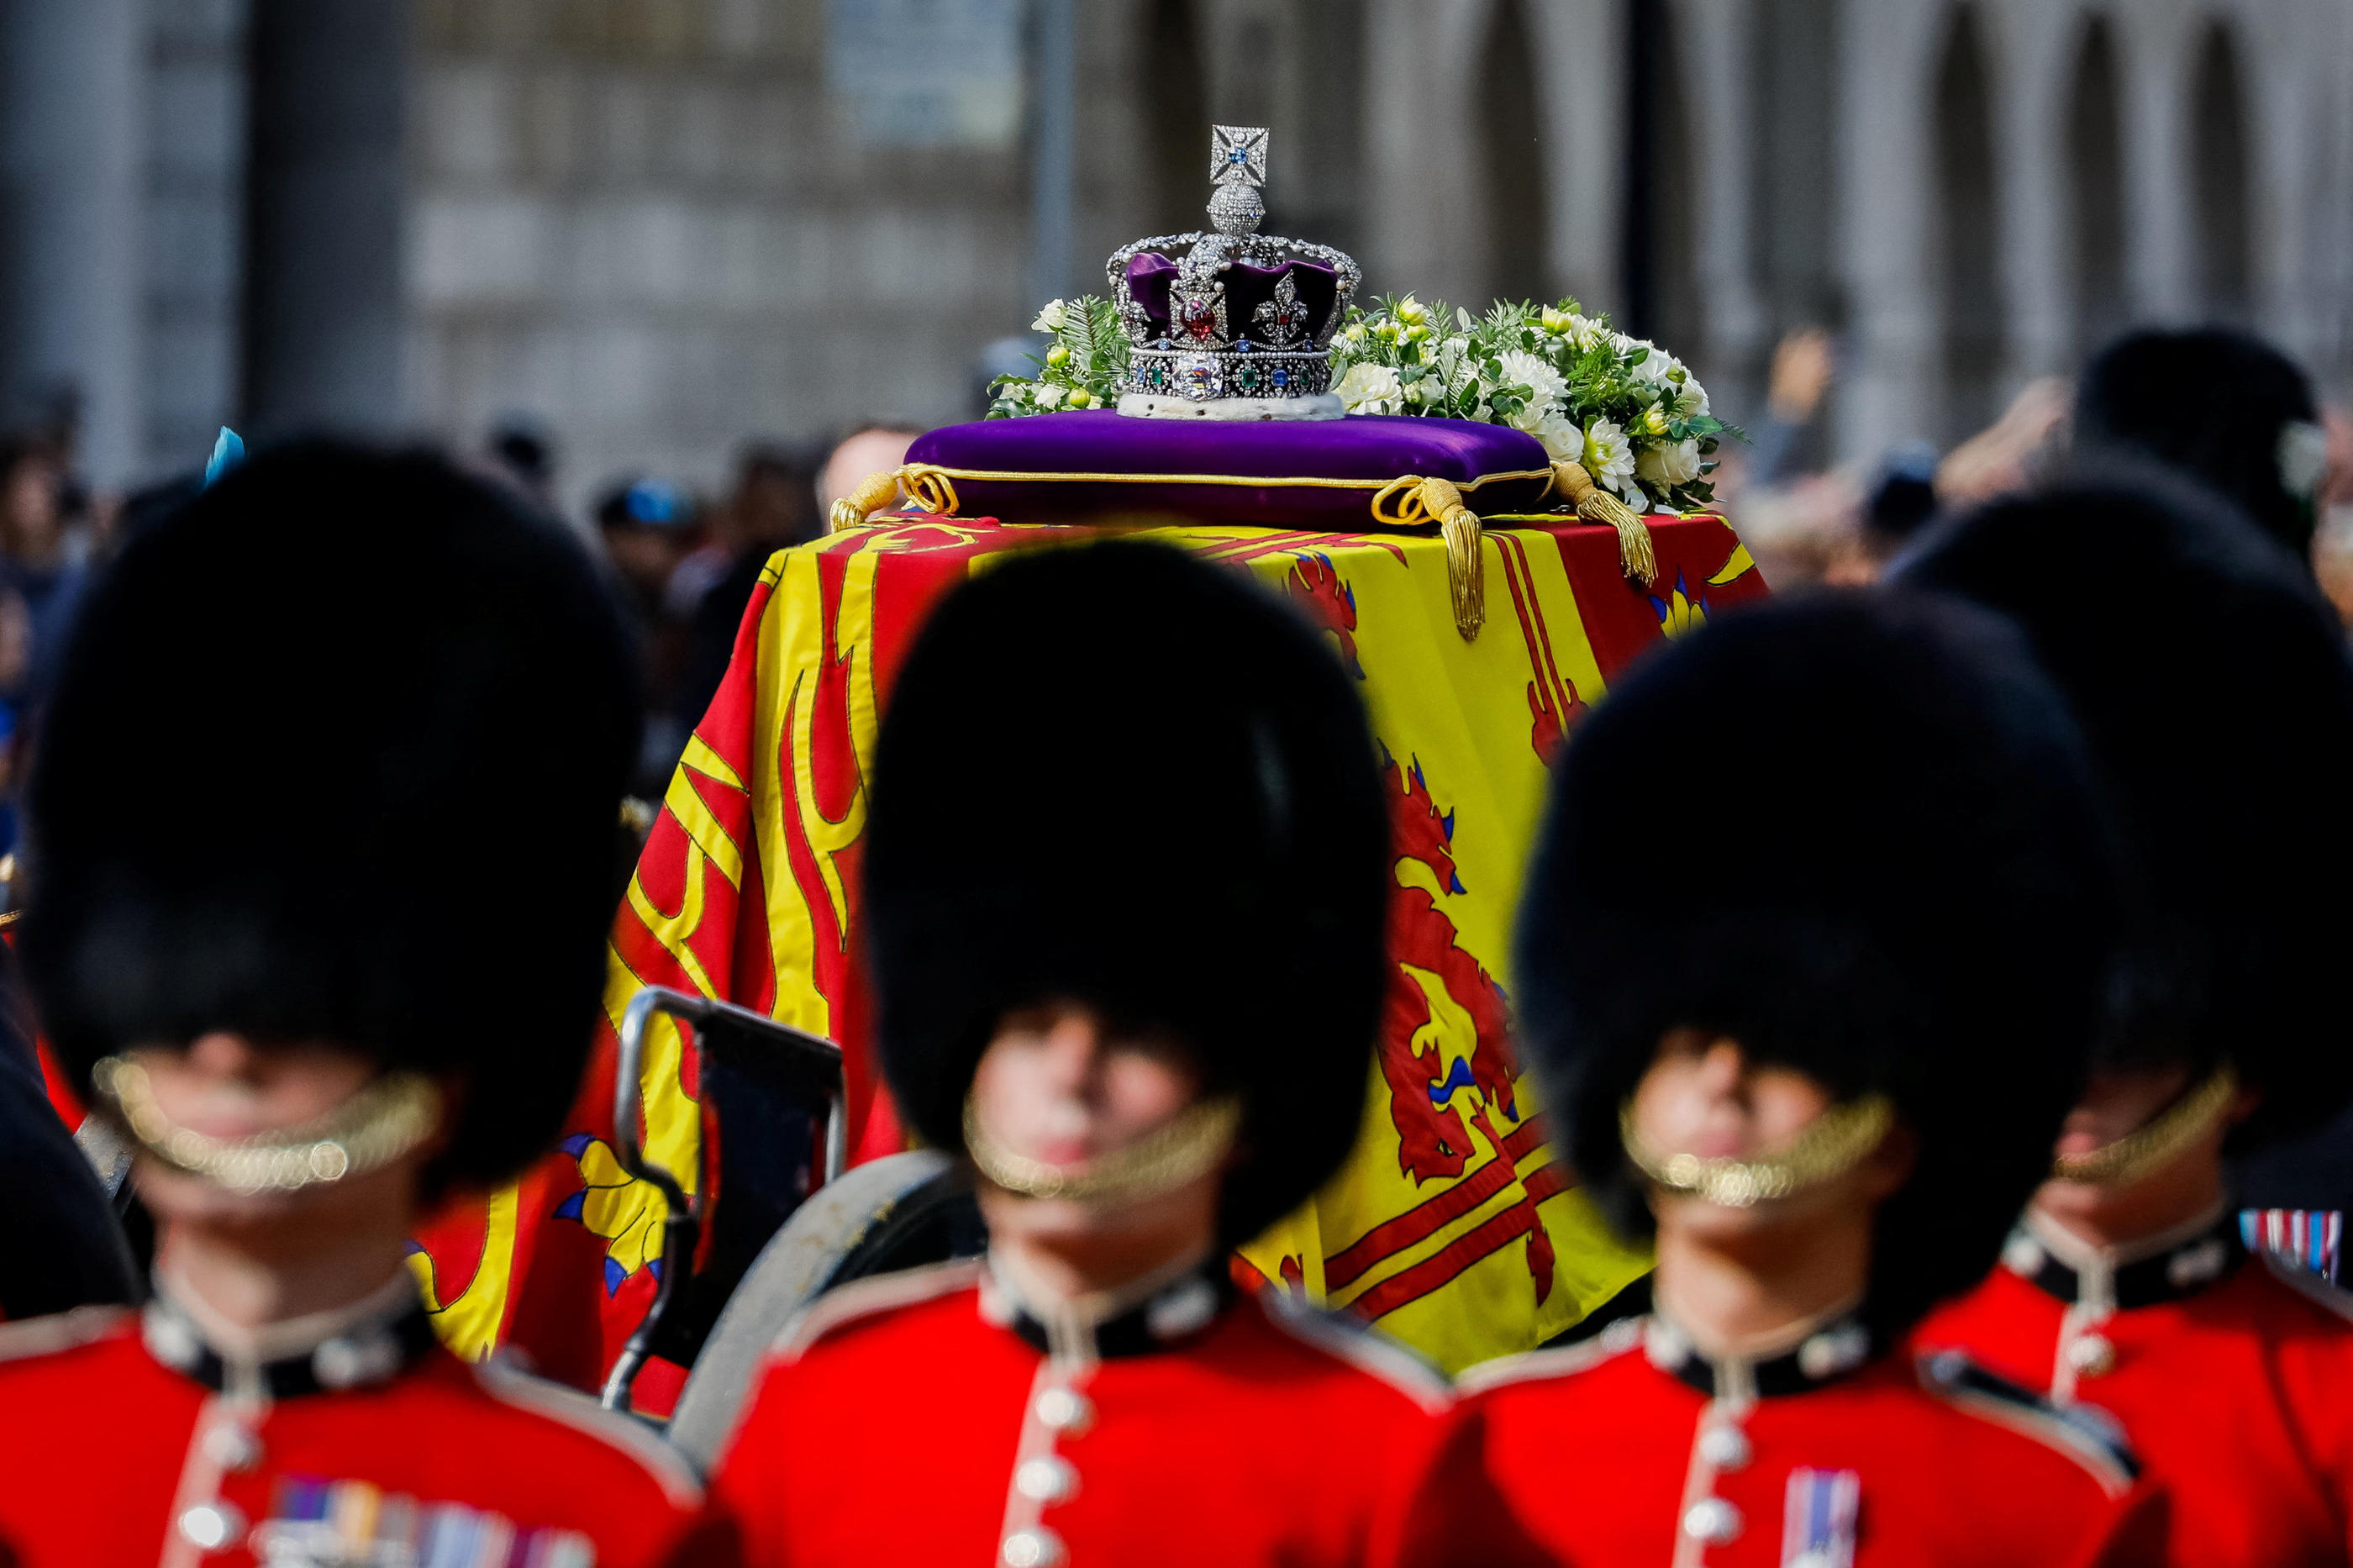 À 10h30 (11h30 en France), le cercueil de la souveraine, monté sur un affût de canon, sera conduit dans l’abbaye de Westminster. Reuters/Tristan Fewings